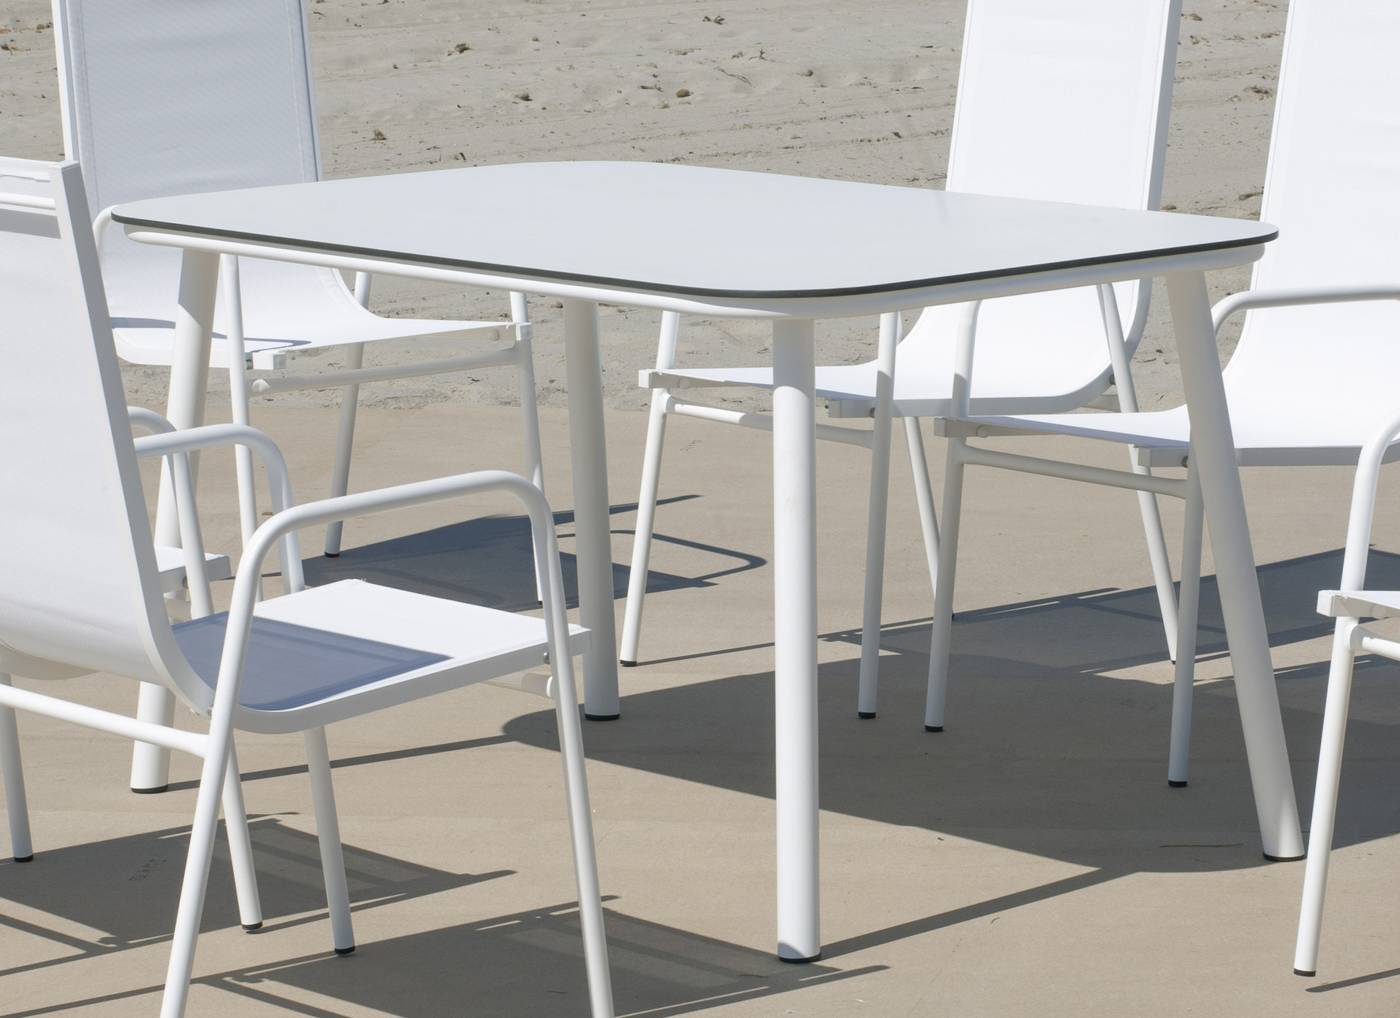 Mesa rectangular de aluminio, con pata circular y tablero HPL de 150 cm. de esquinas redondenadas. Colores: blanco y antracita.